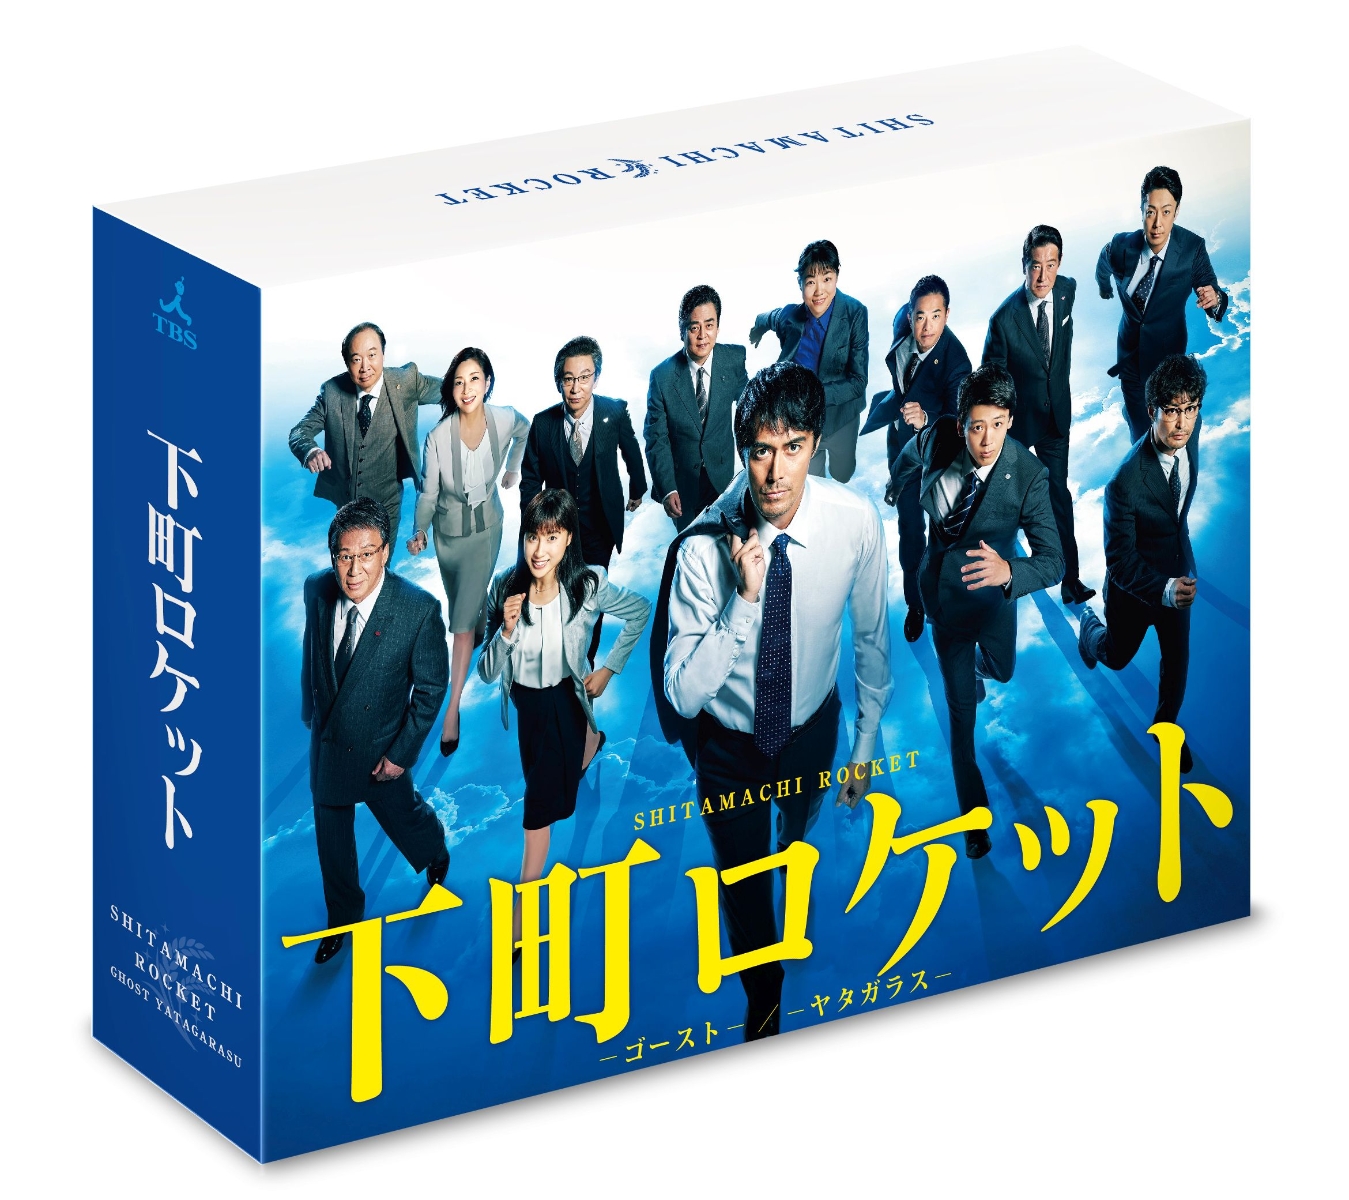 下町ロケット -ゴーストー／-ヤタガラスー 完全版 Blu-ray BOX【Blu-ray】画像